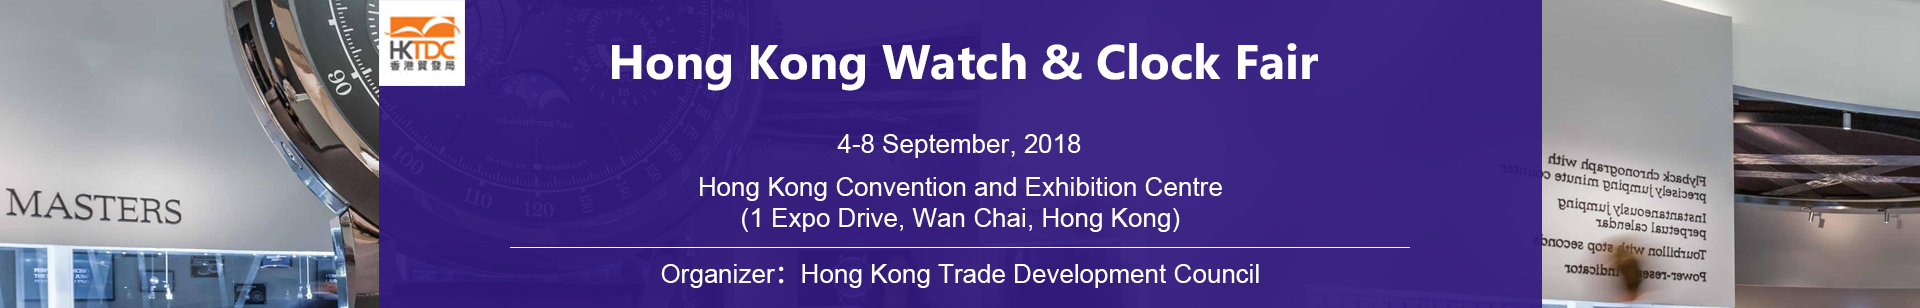 Hong Kong Watch & Clock Fair